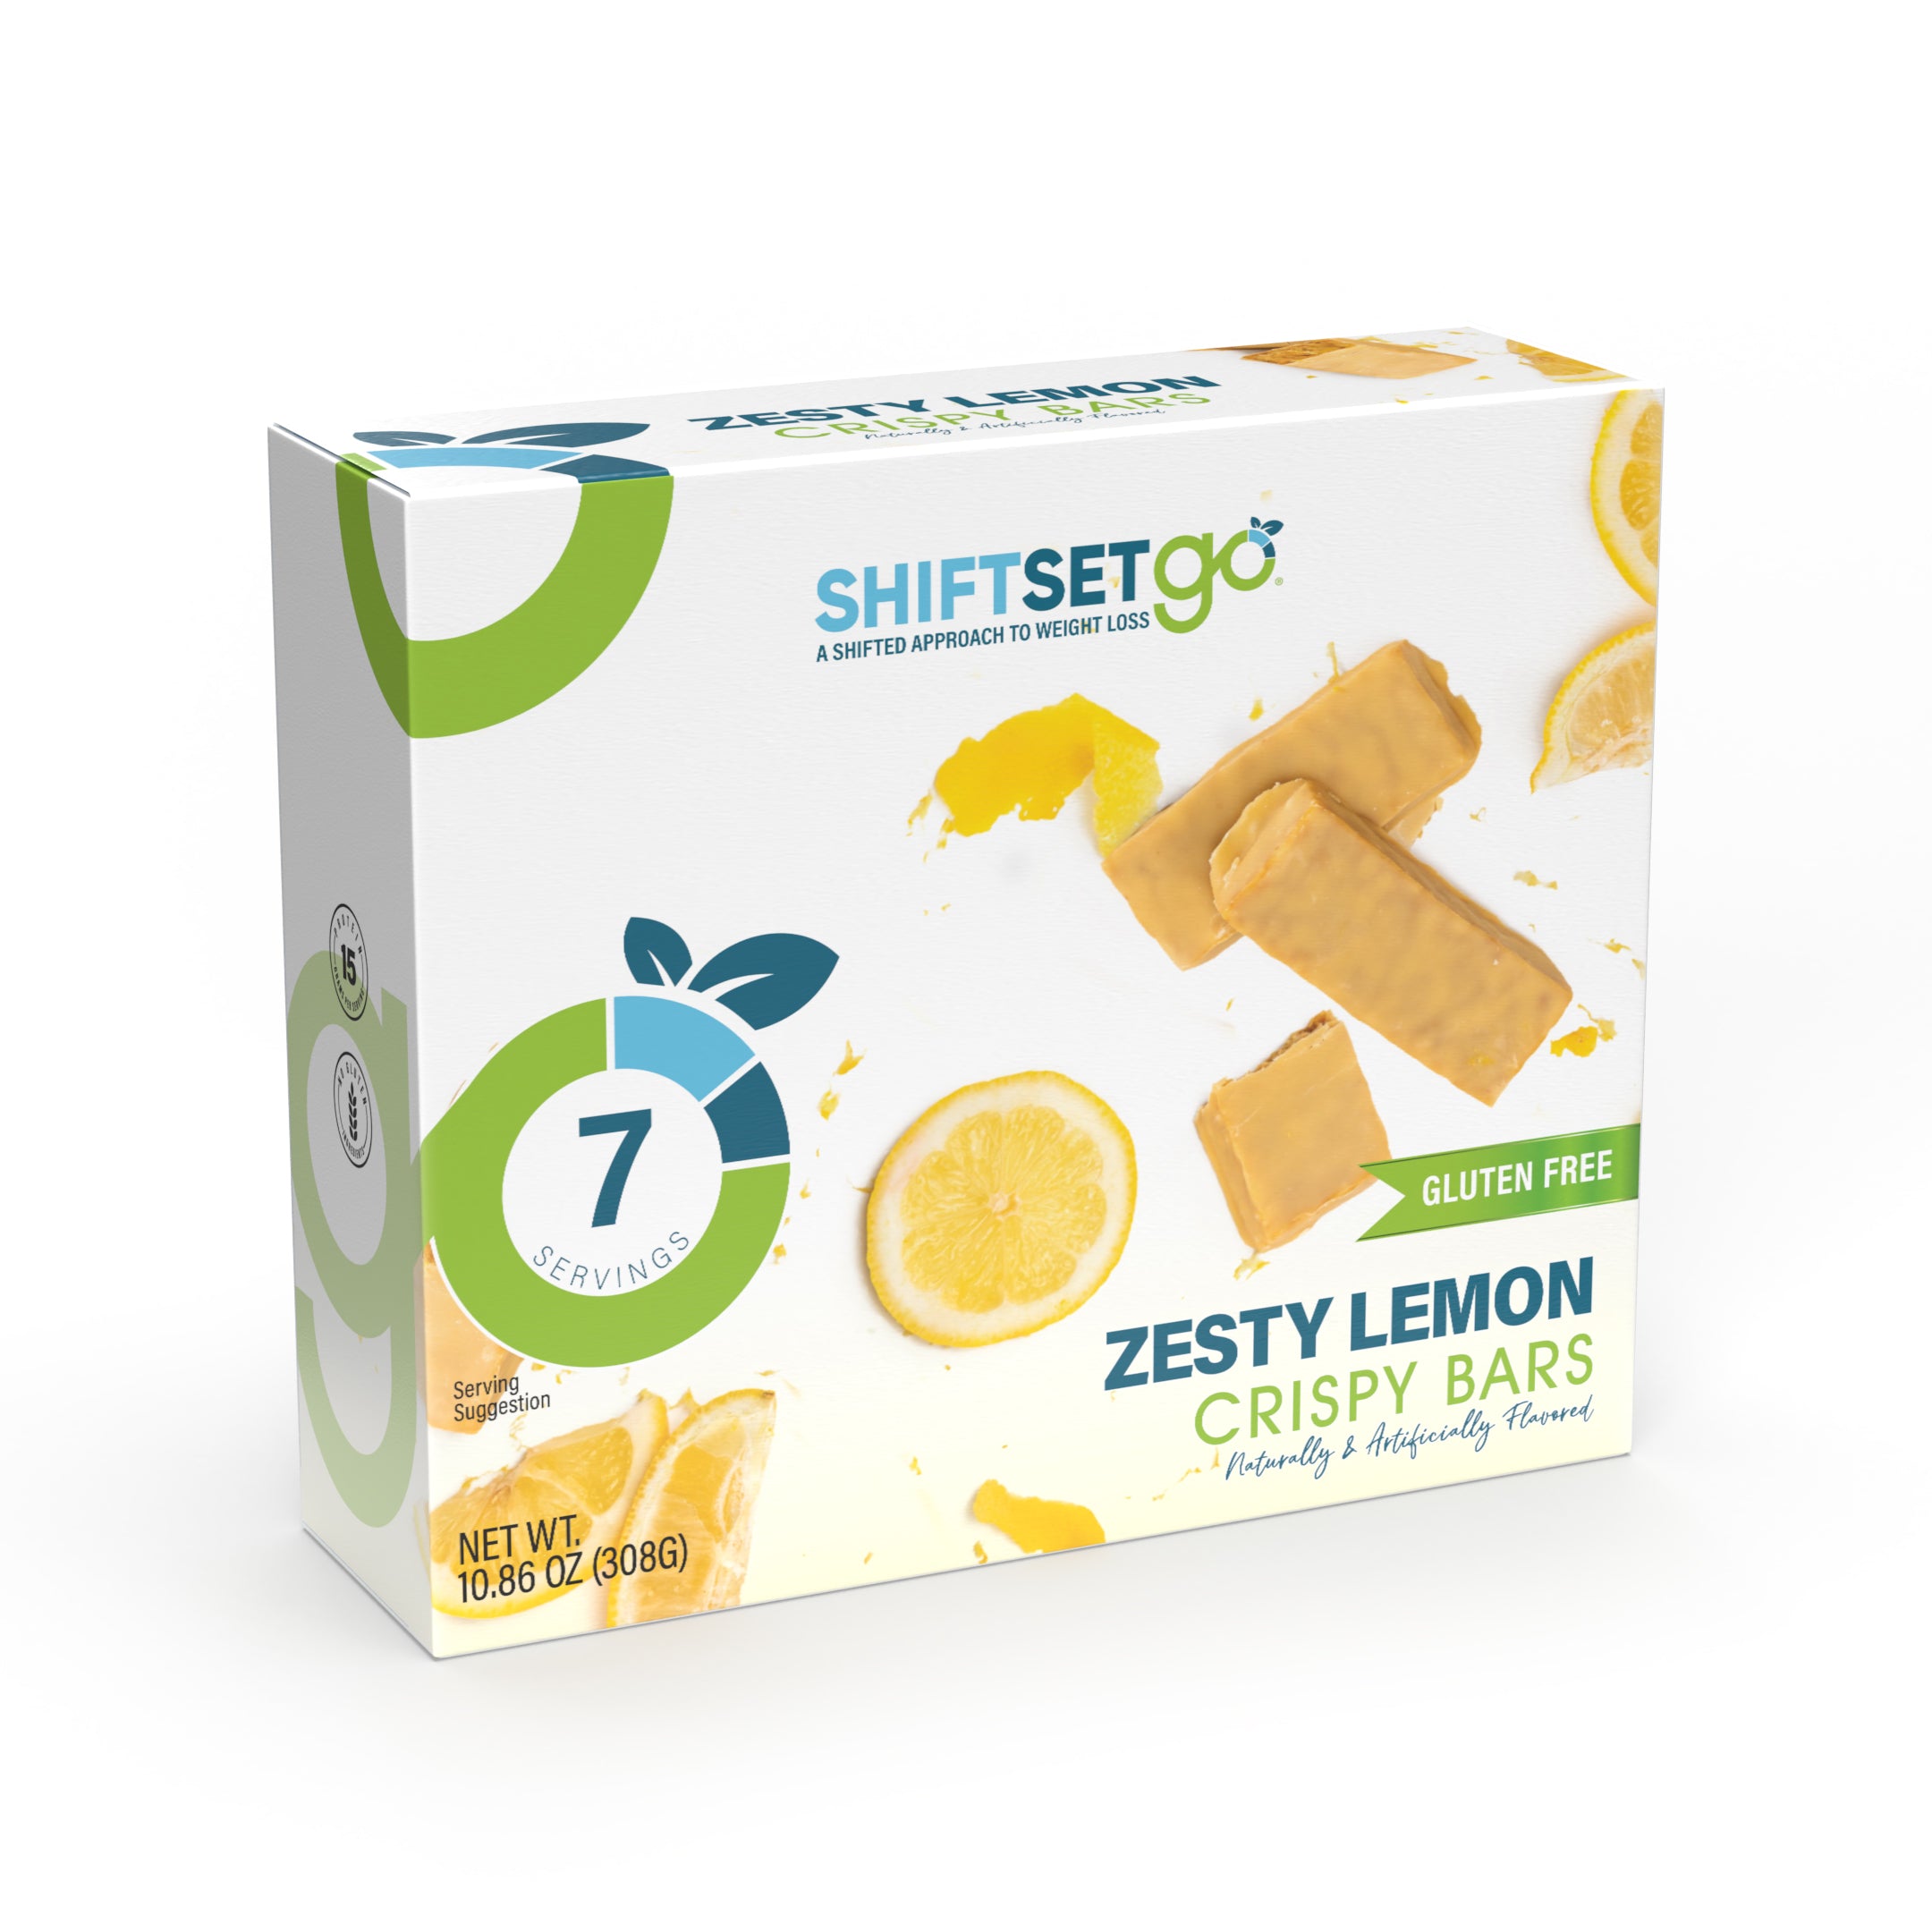 Zesty Lemon Crispy Bars